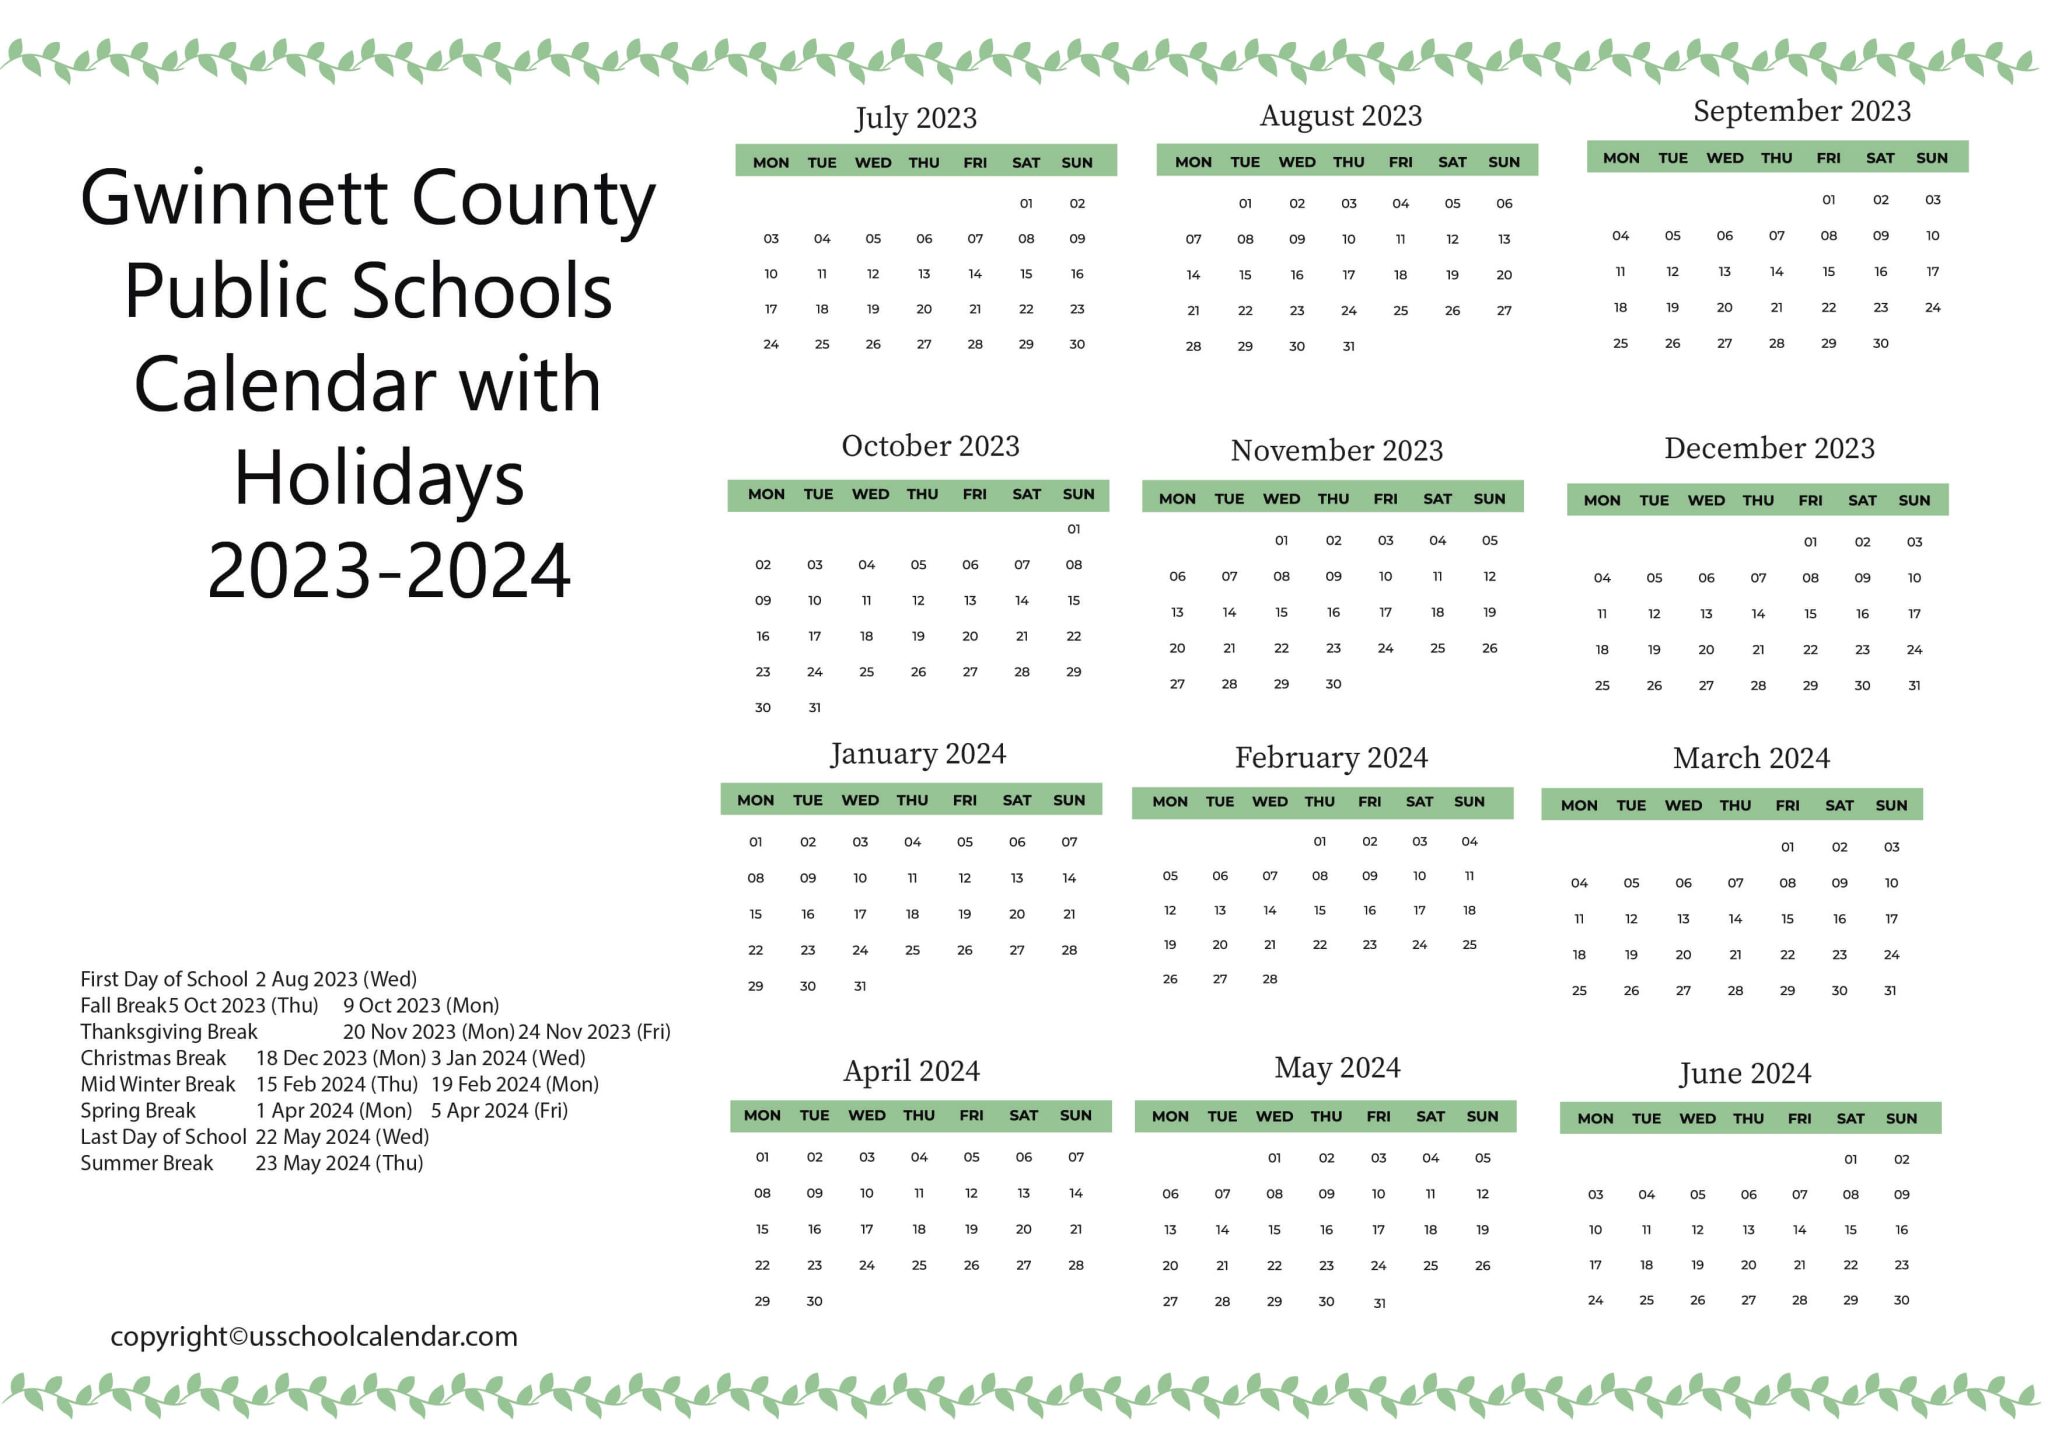 gwinnett-county-public-schools-calendar-with-holidays-2023-2024